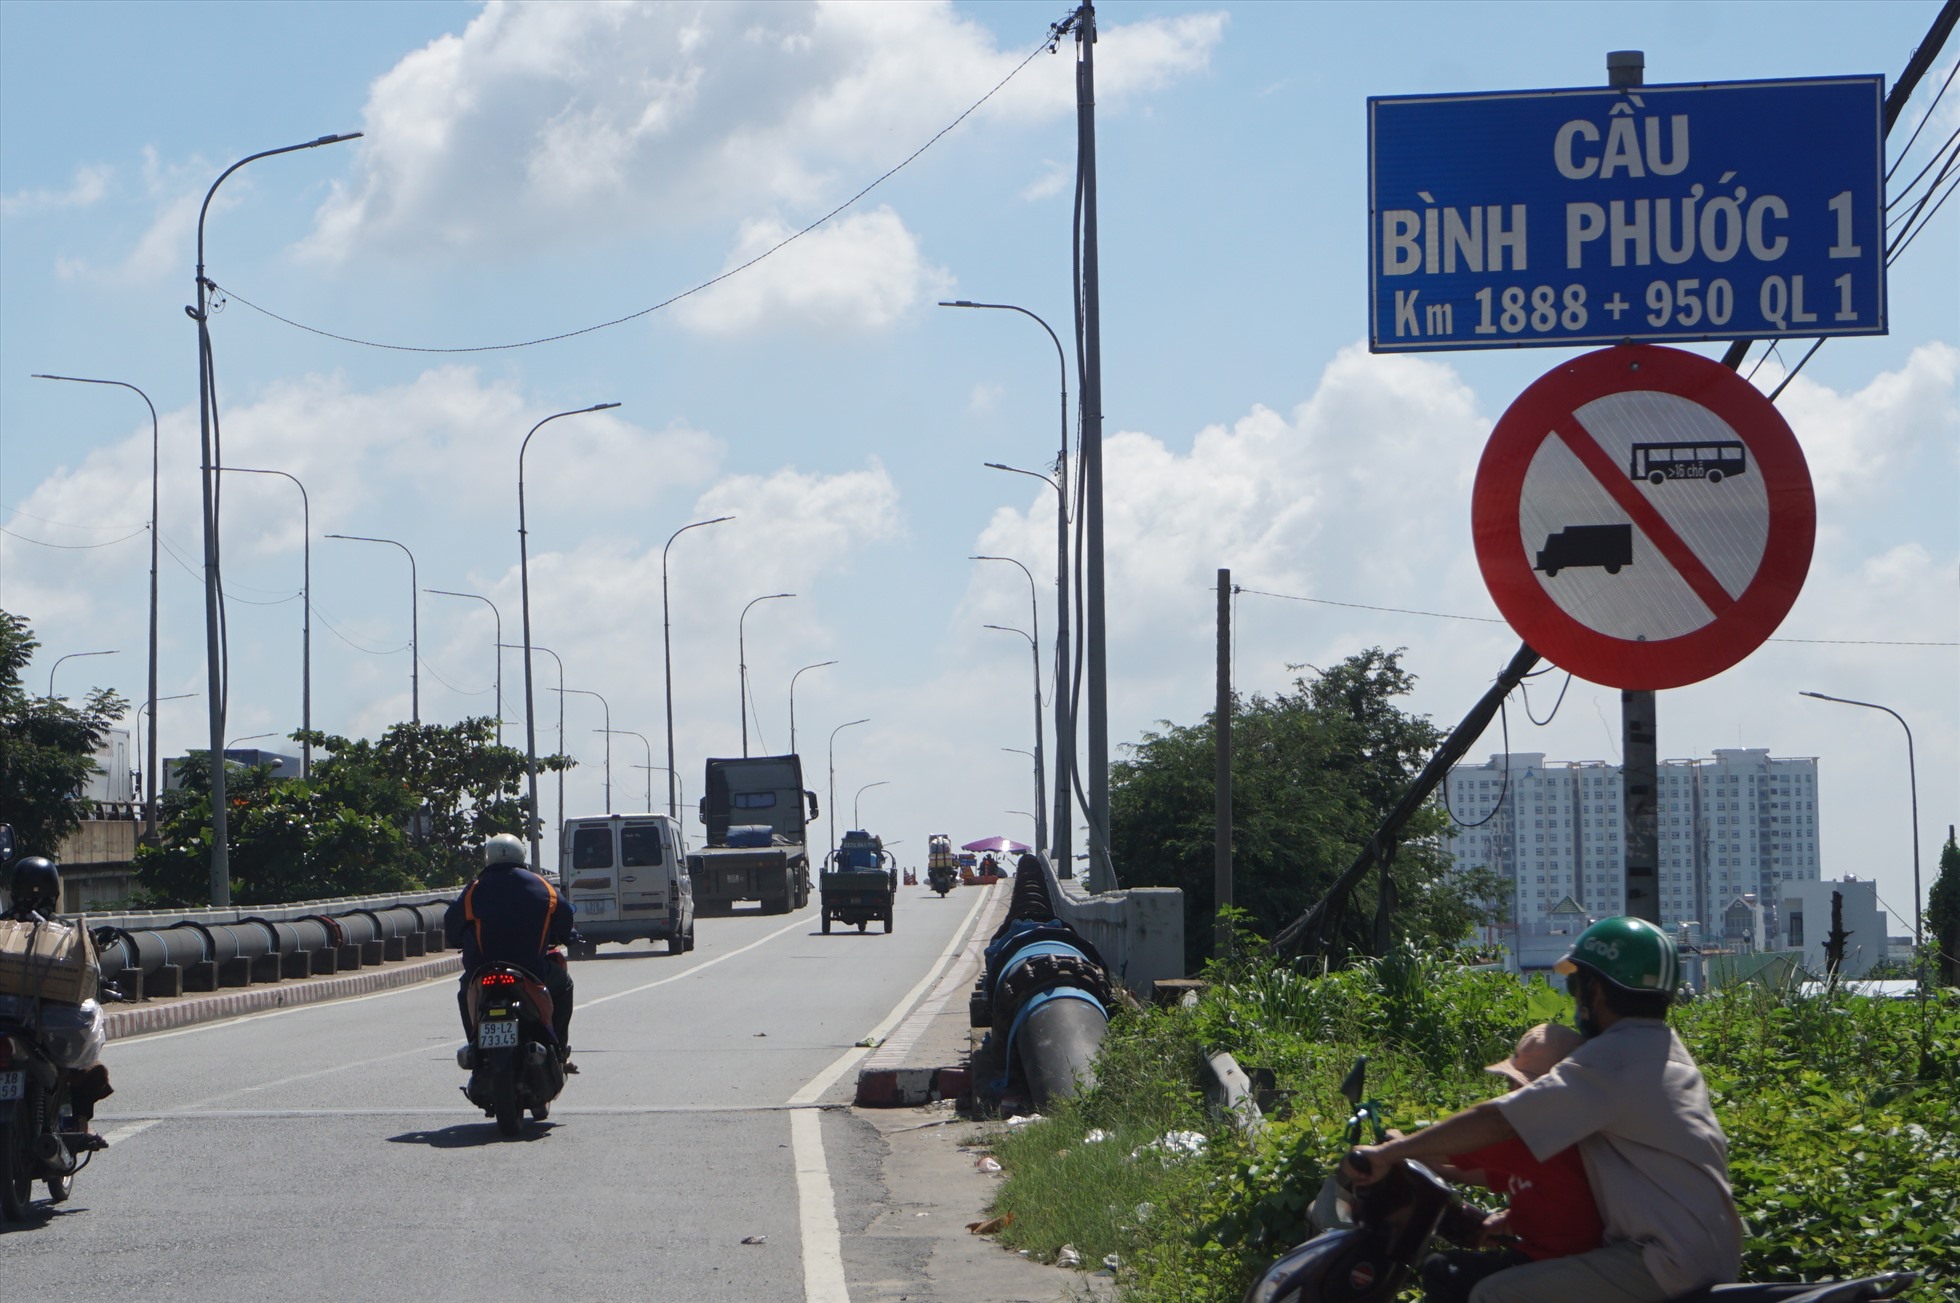 Xe tải, xe khách trên 16 chỗ bị cấm chạy qua cầu Bình Phước 1 hướng từ quận 12 qua Thành phố Thủ Đức.  Ảnh: M.Q